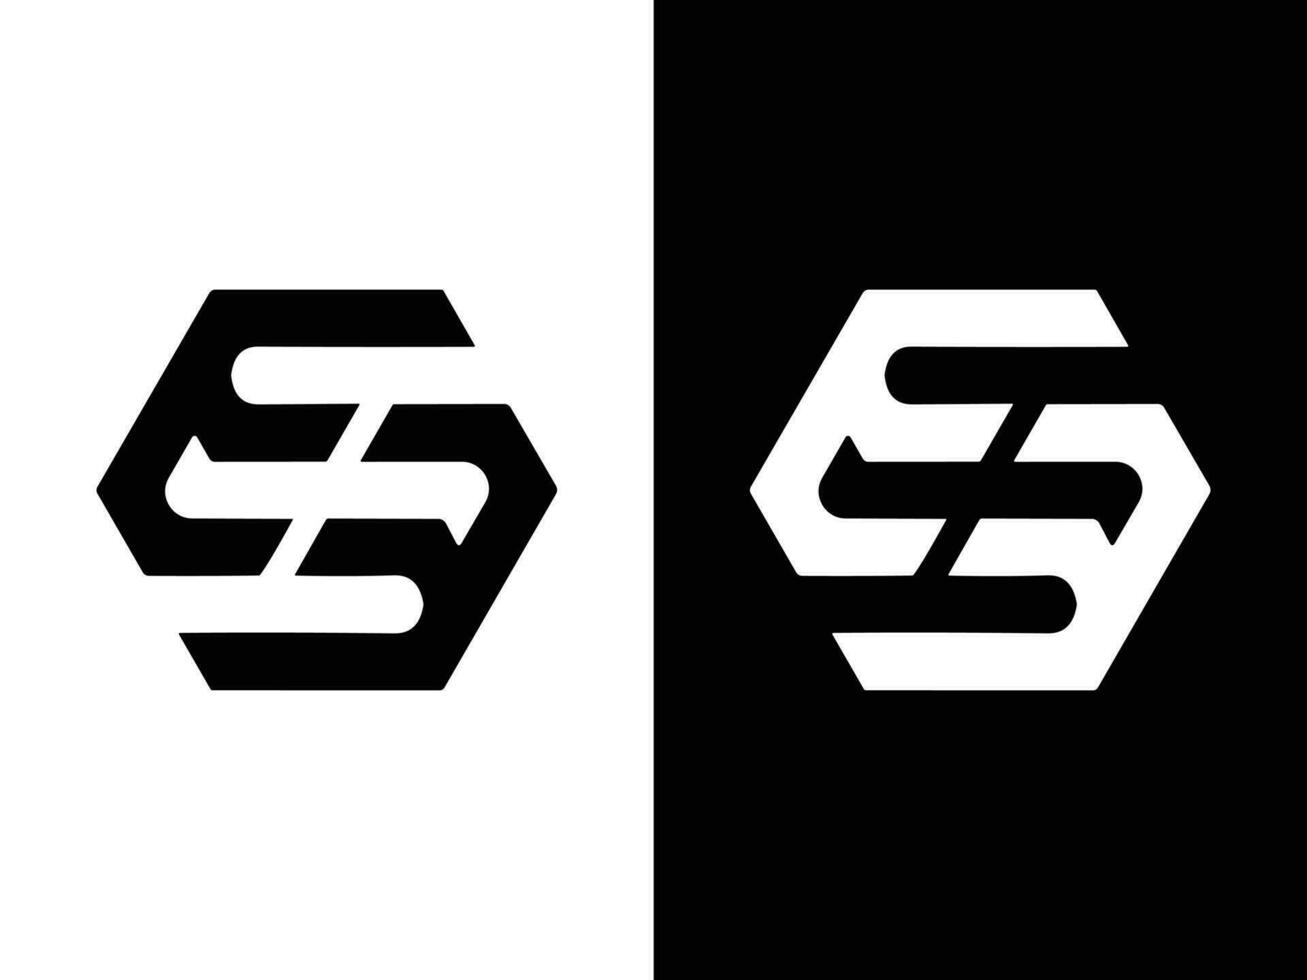 EE letter logo design vector